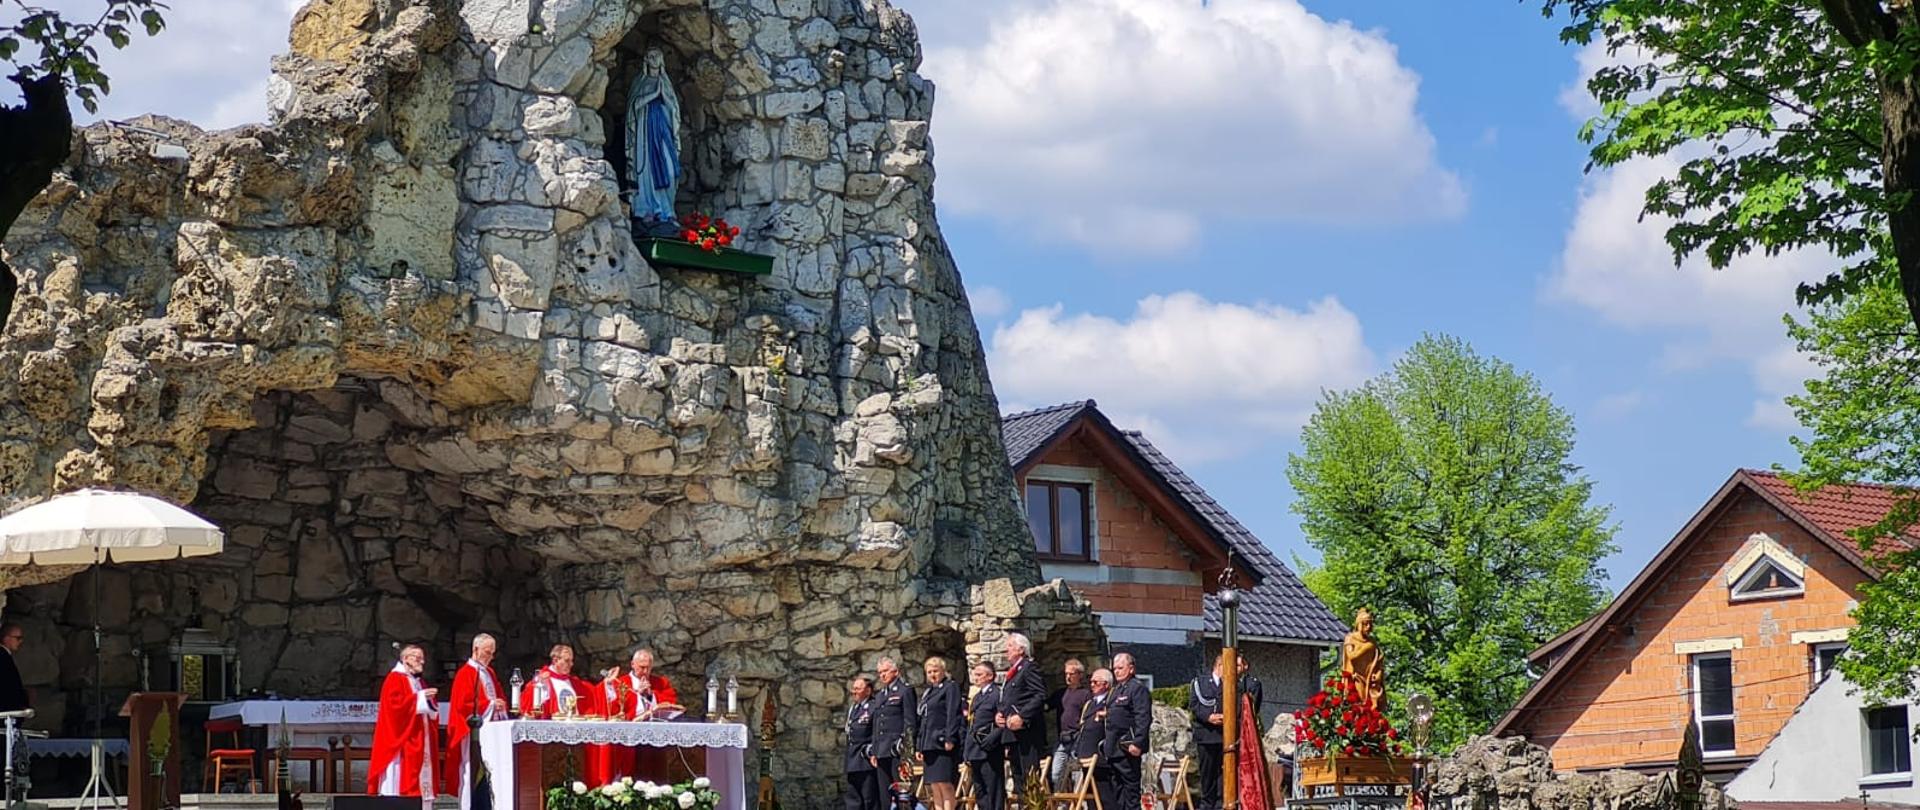 Na zdjęciu znajduje się ołtarz, księża, poczty sztandarowe oraz uczestnicy mszy świętej w grocie z kamieni na tle dachów z budynków mieszkalnych